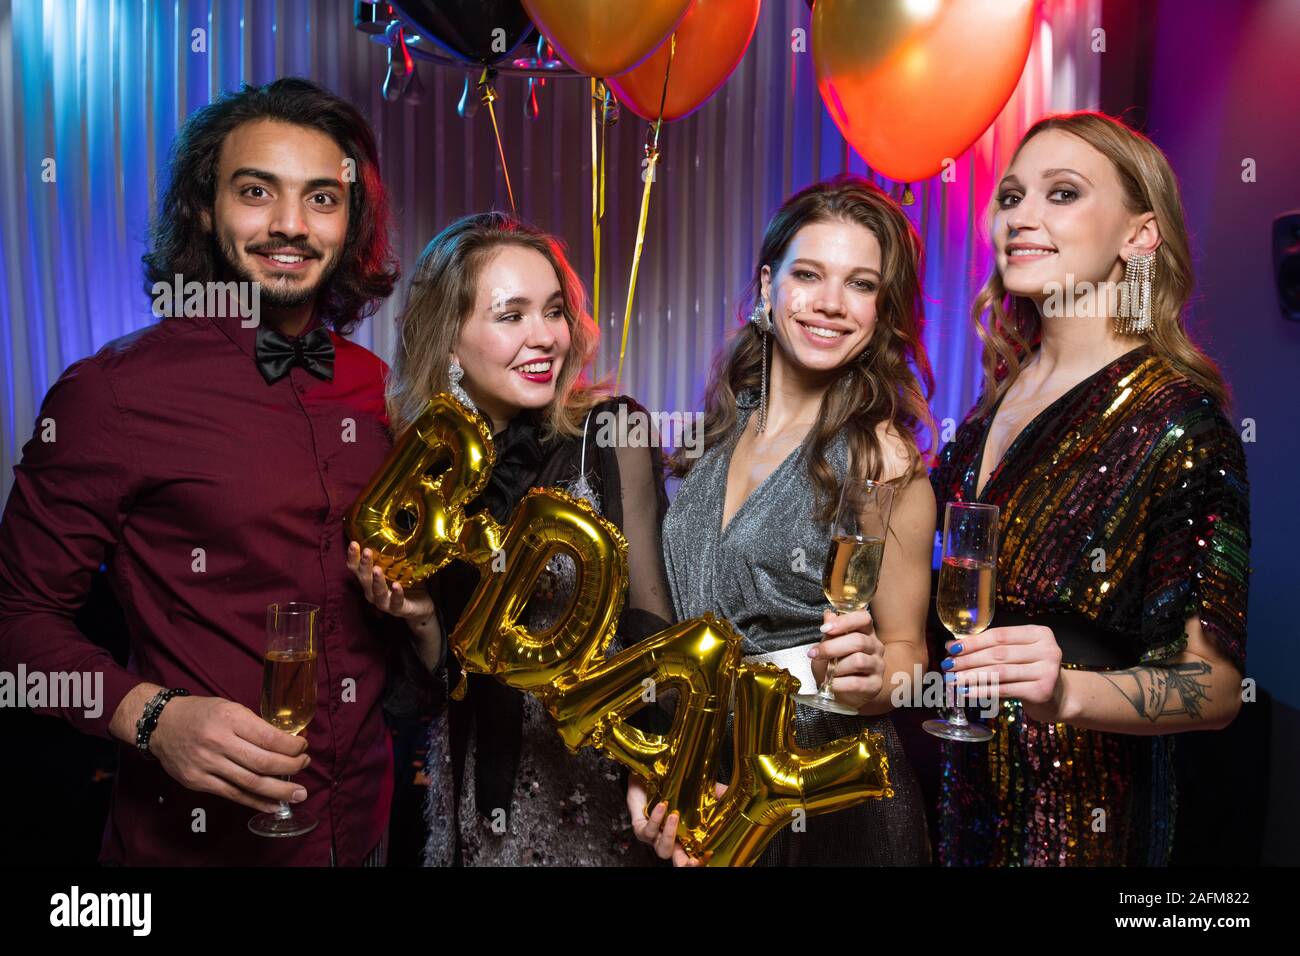 Les filles et les jeunes gais homme élégant holding flutes de champagne et des ballons Banque D'Images